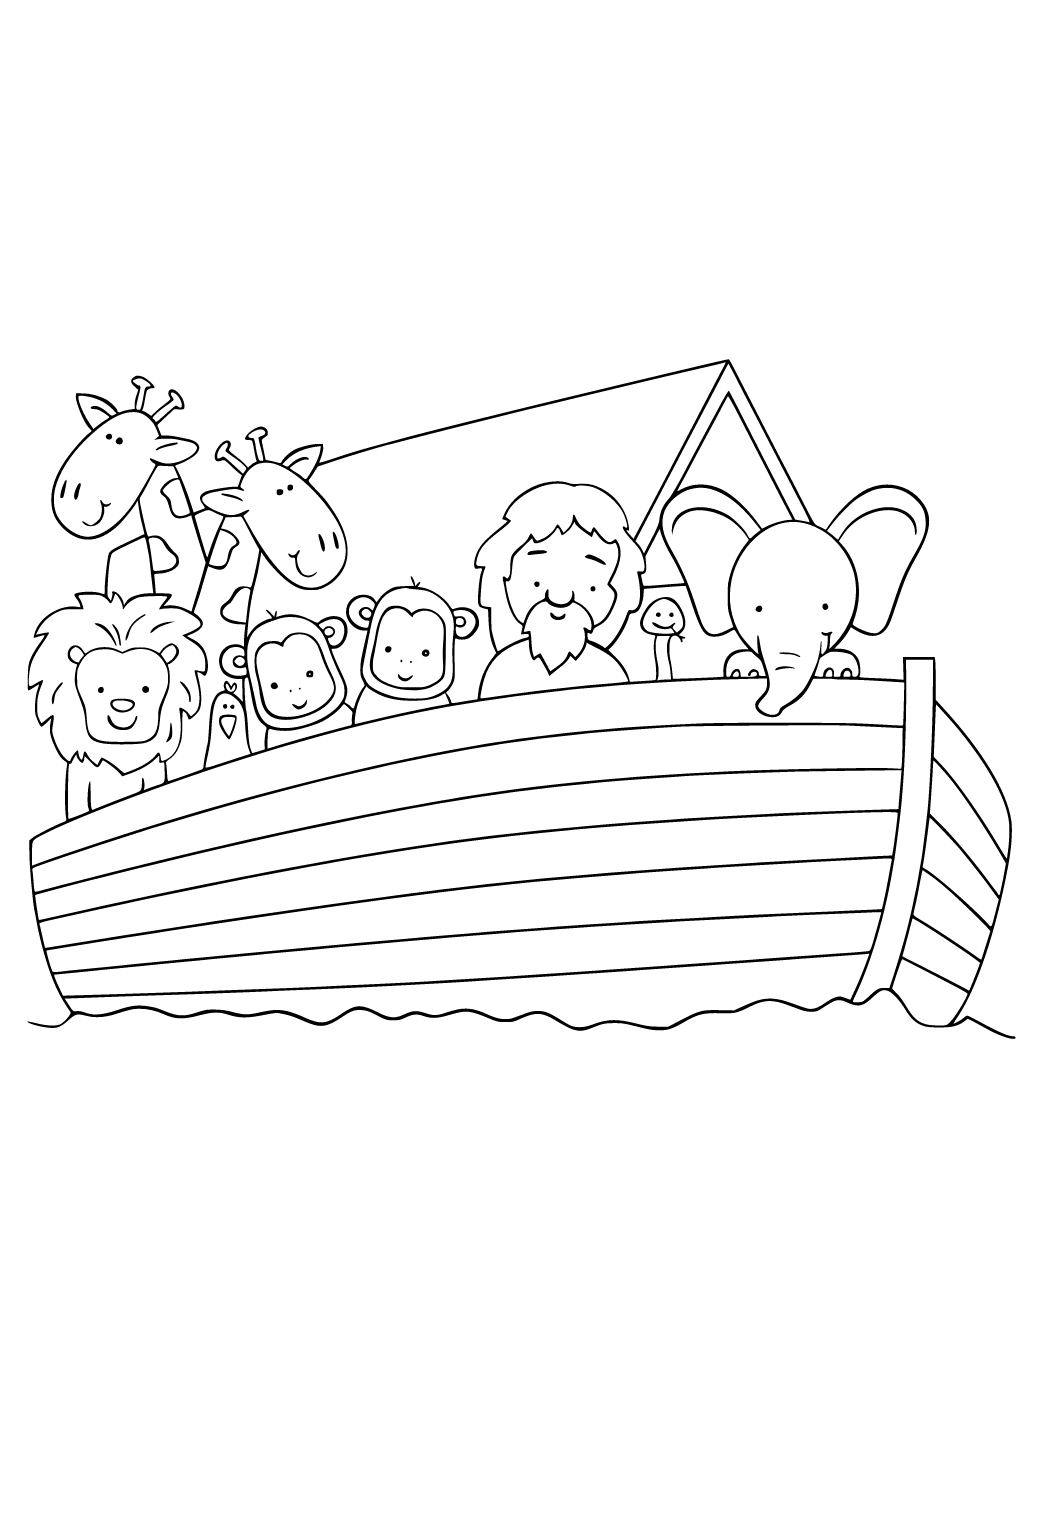 سفينة نوح